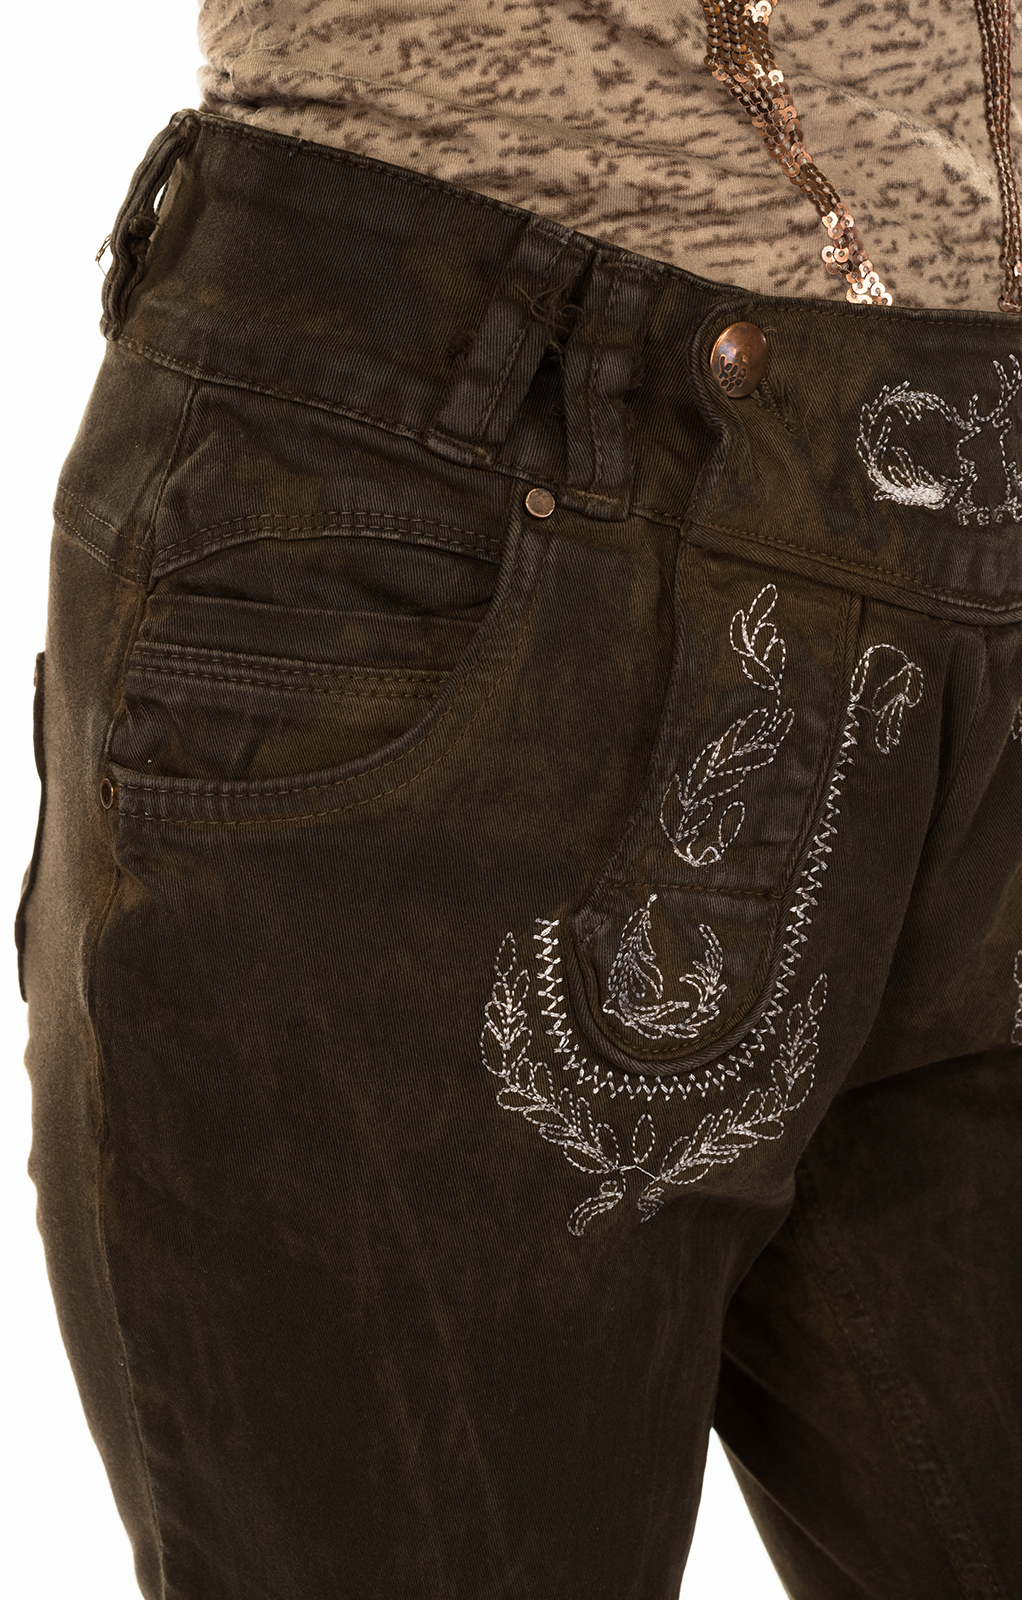 weitere Bilder von Pantaloni Ttrachten ginocchio NICOLE 1769 marrone